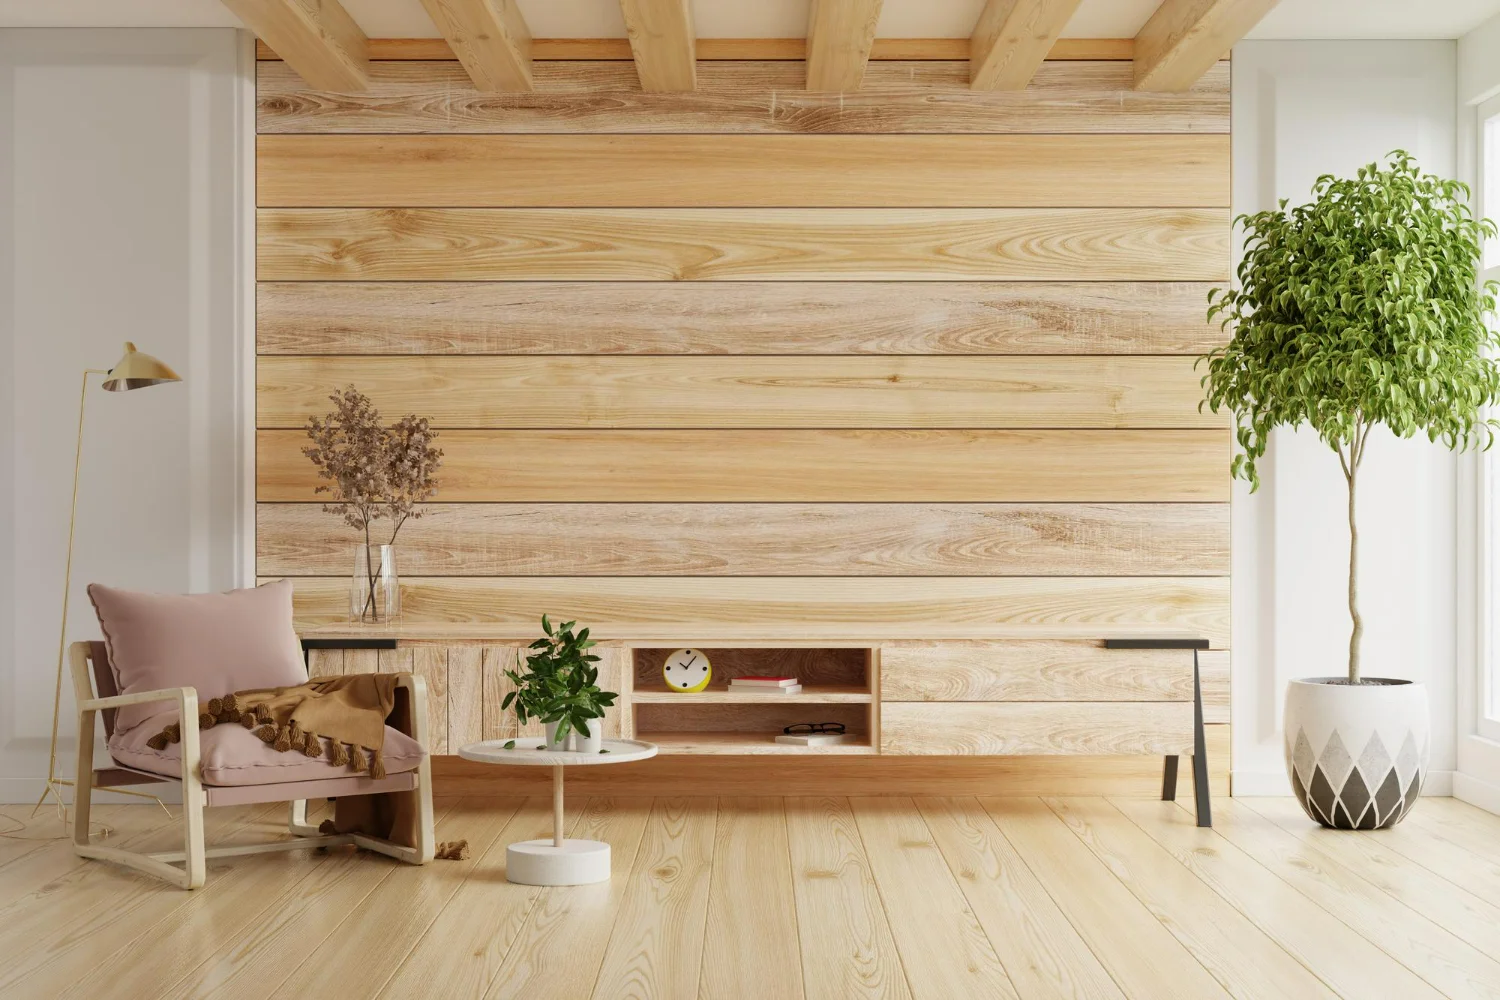 Sala em madeira